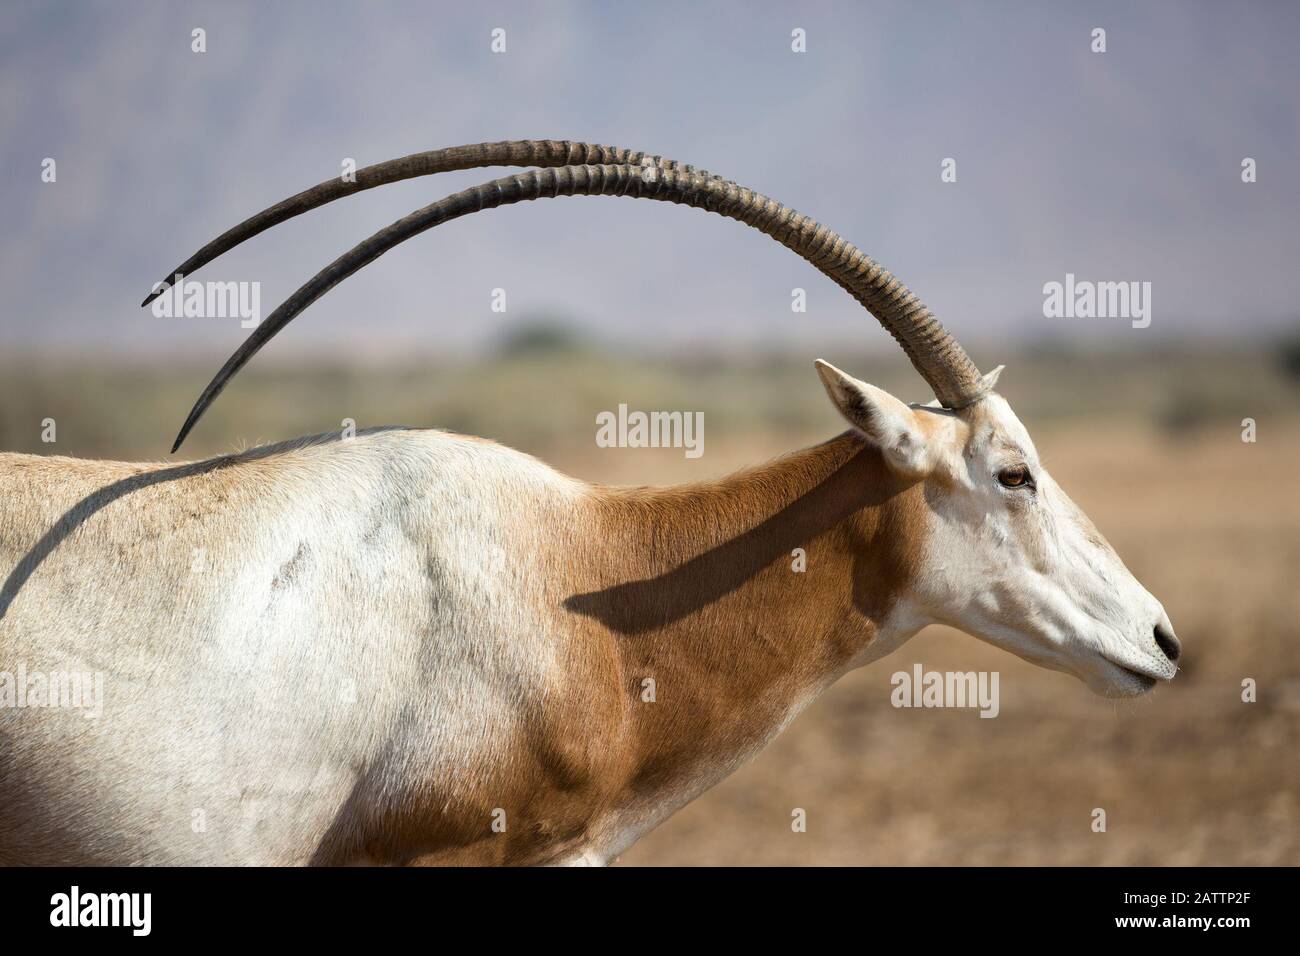 Orice de cuernos cimitares, especie en peligro de extinción extinguida en estado silvestre, en un centro de cría y reaclimatación en el desierto del Negev. Oryx dammah. Foto de stock